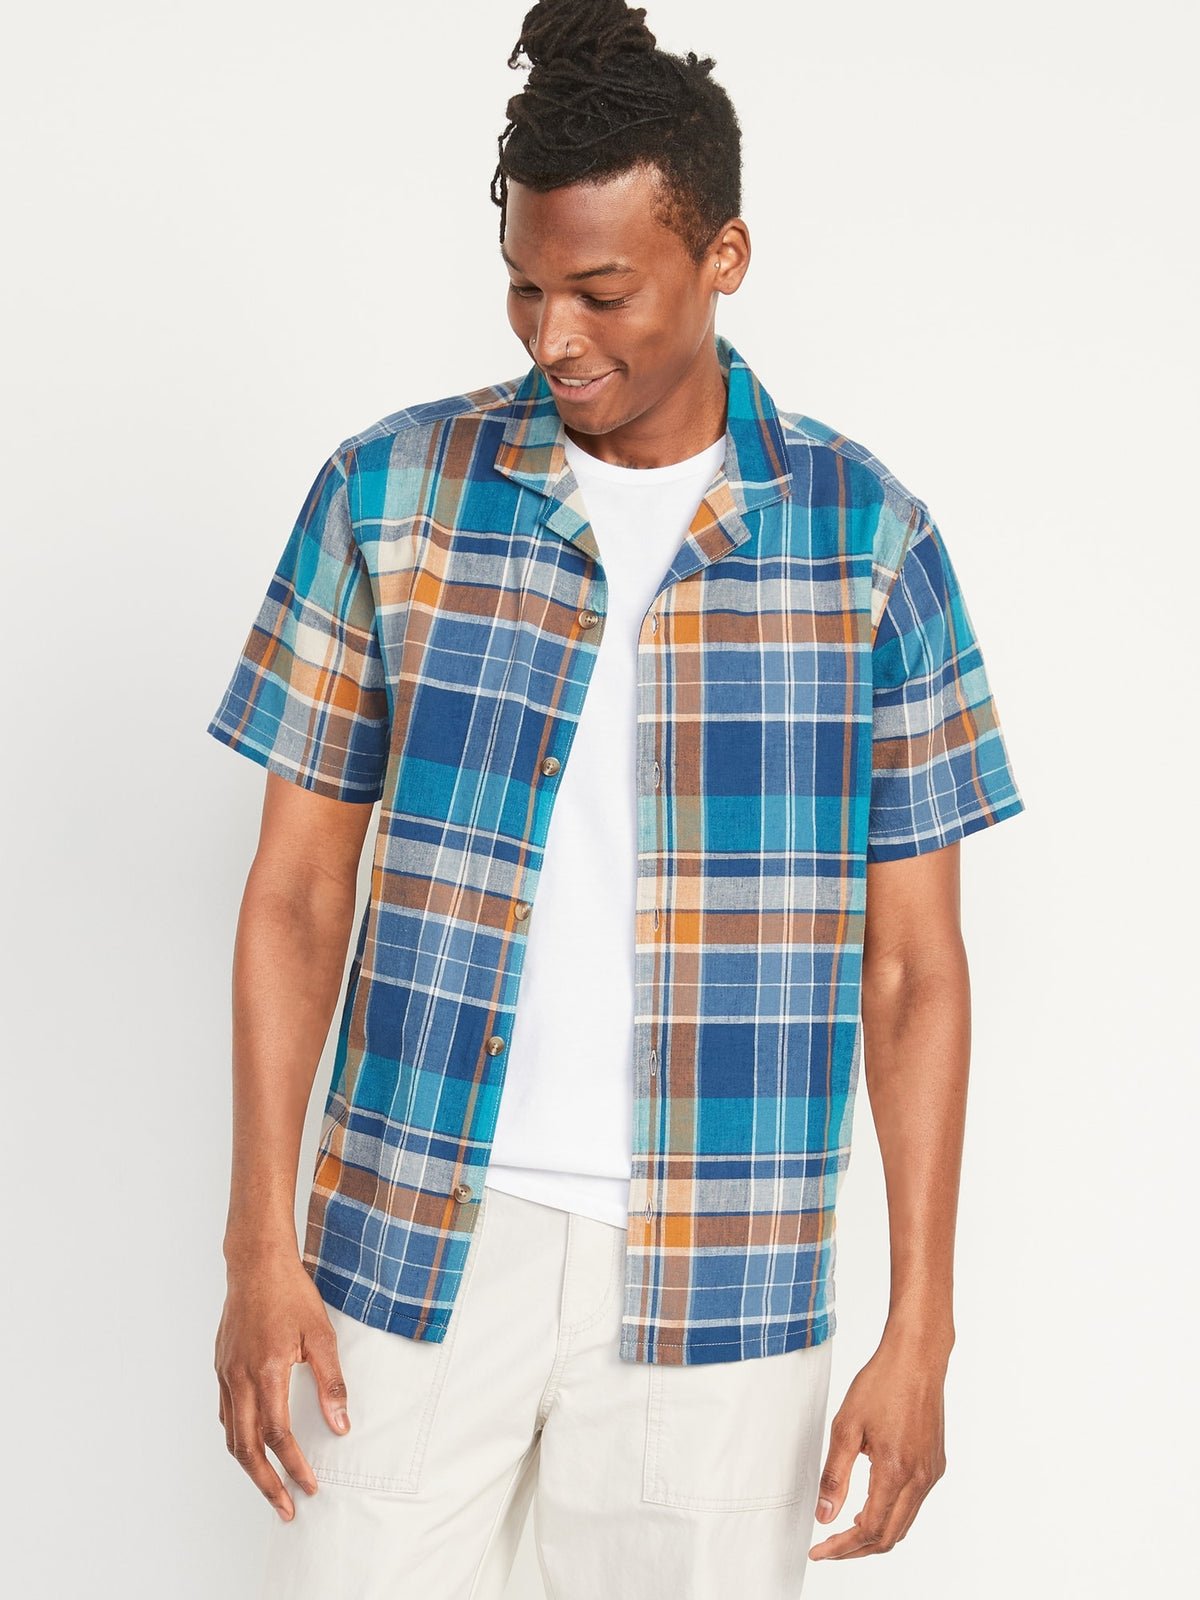 Matching Plaid Linen-Blend Short-Sleeve Camp Shirt for Men_BluePlaid_1950.jpeg